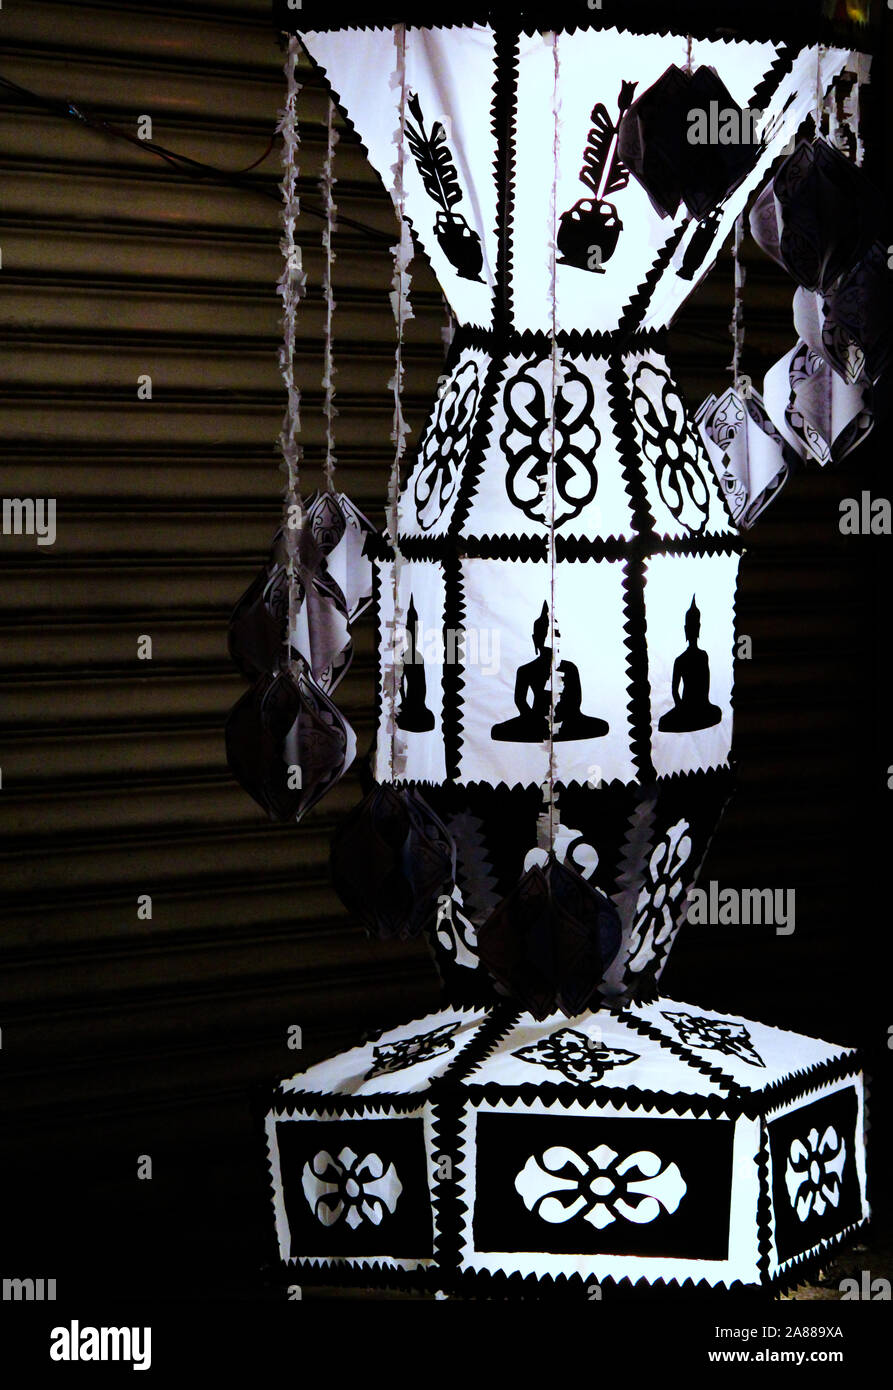 Wesak lantern hi-res stock photography and images - Alamy